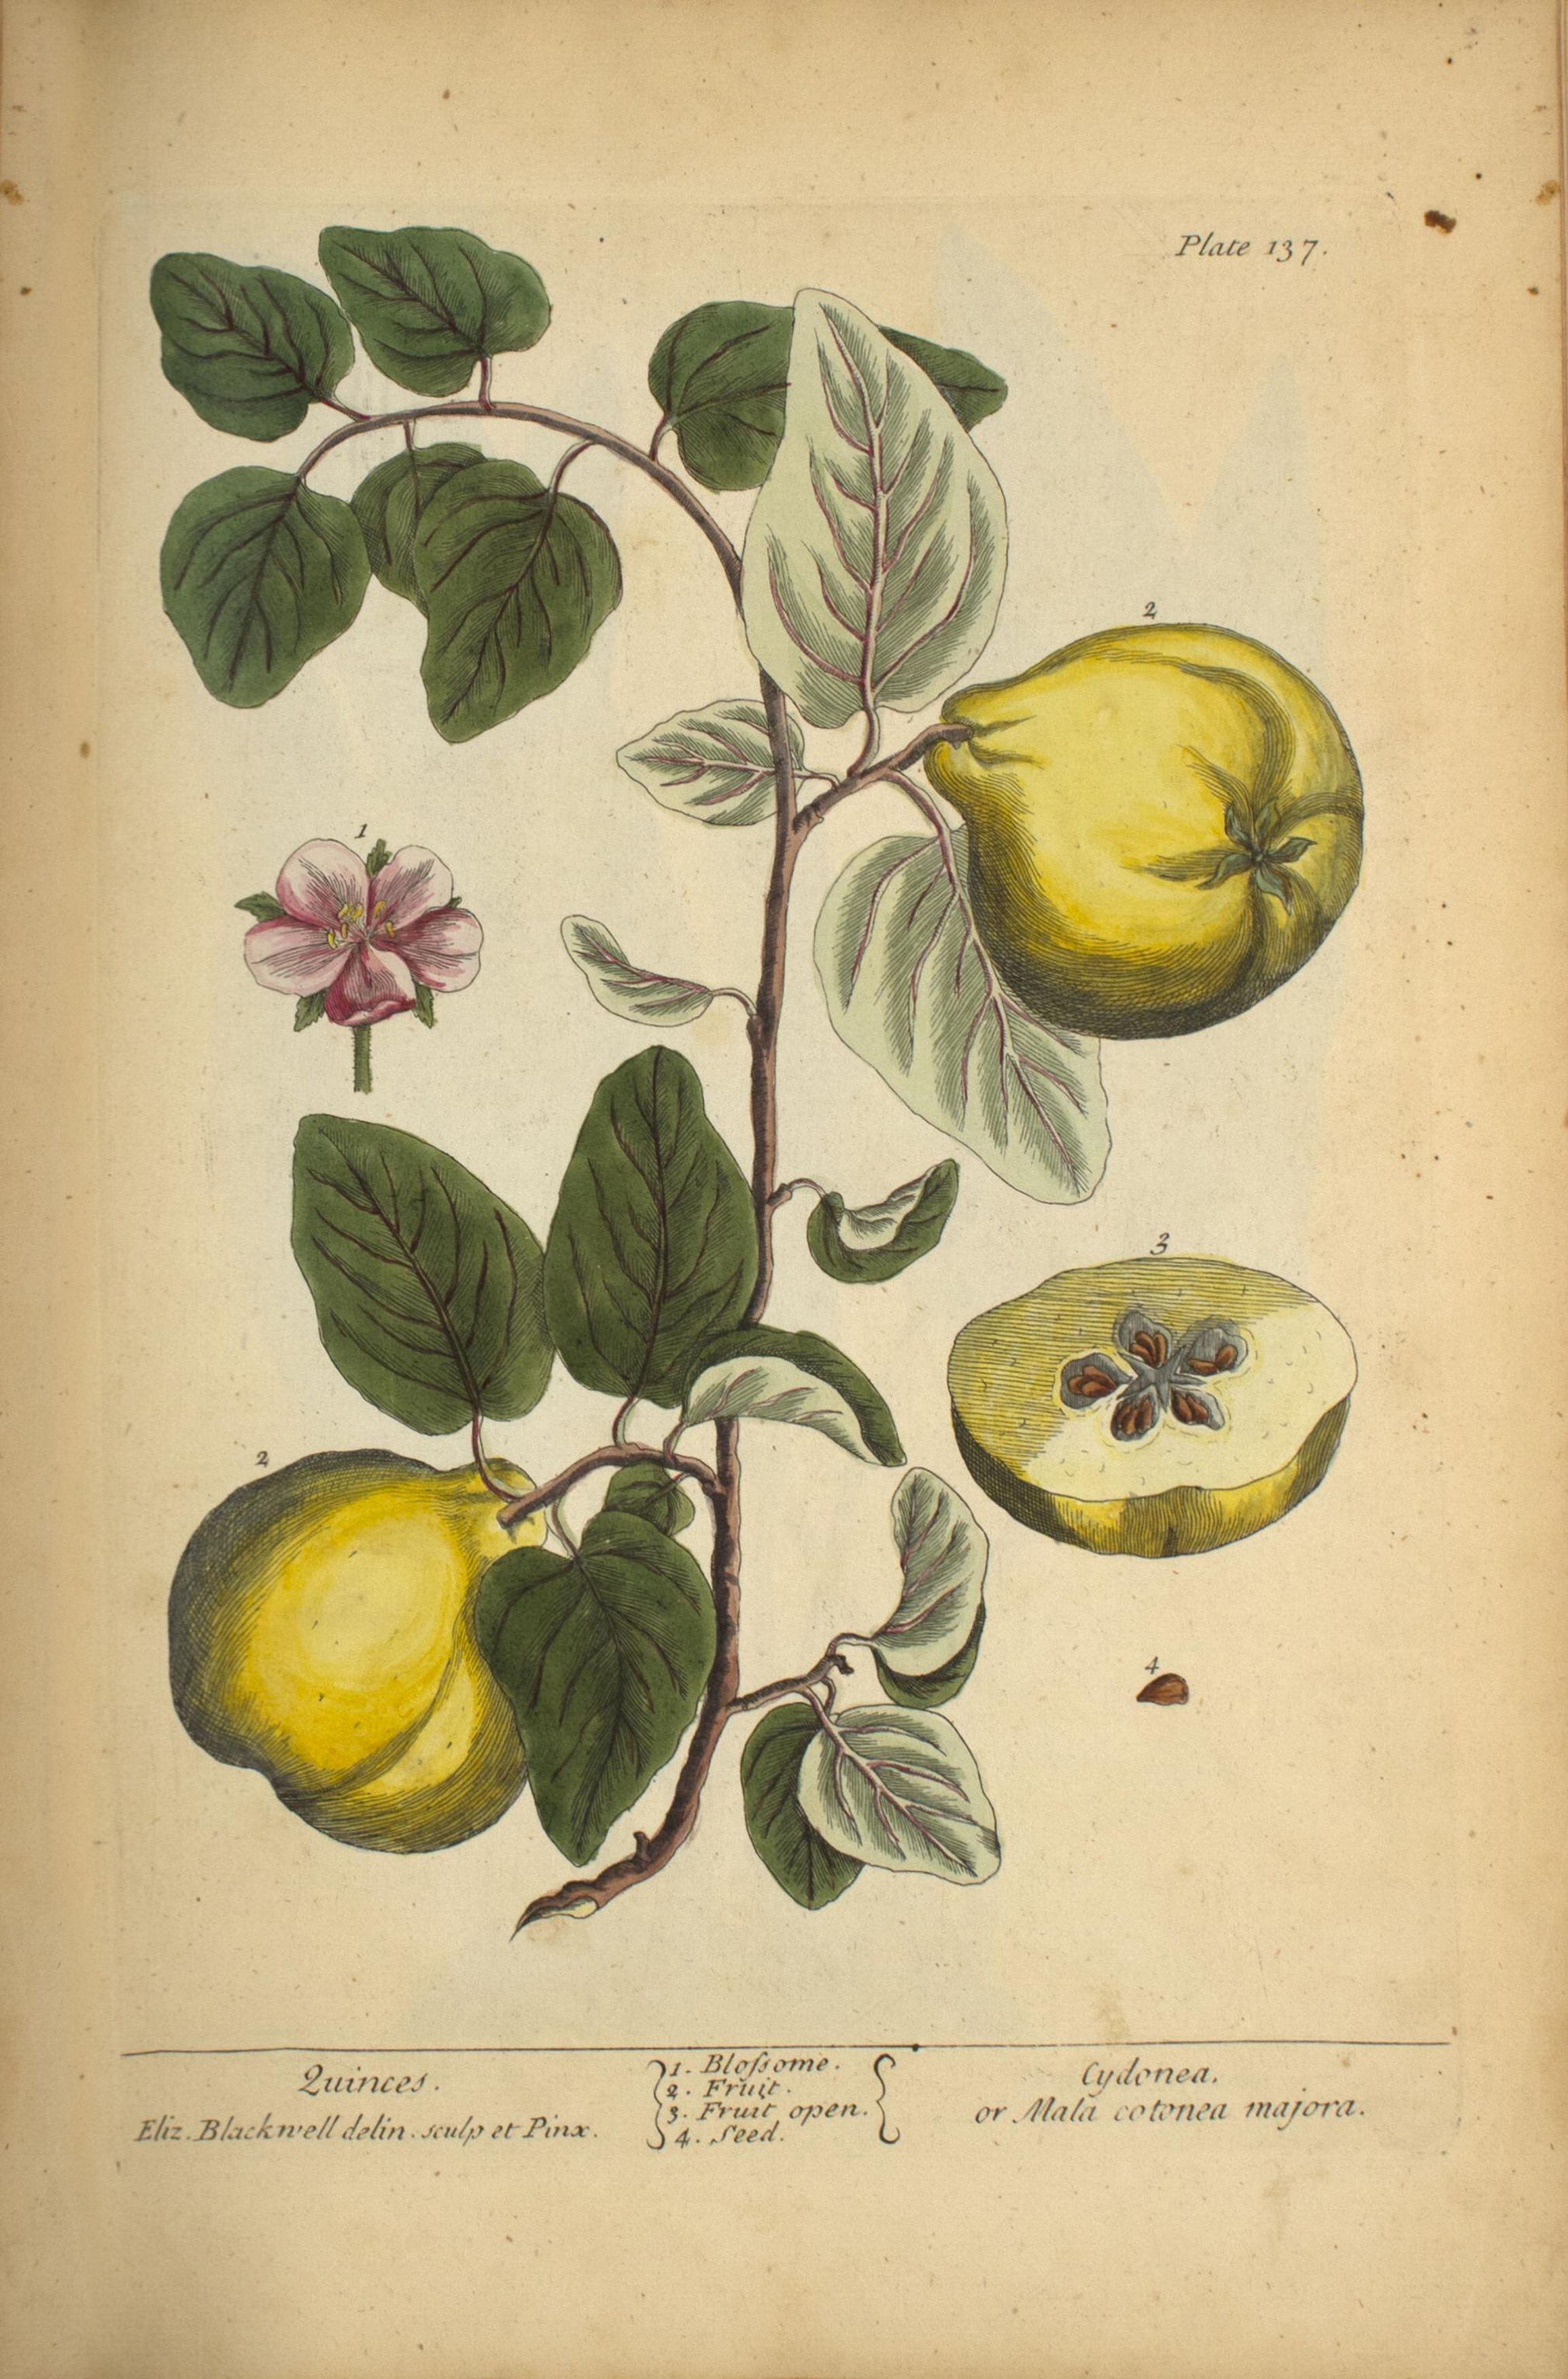 Ilustración botánica de membrillos, 1900. Imagen cortesía de la National Library of Medicine (NLM).